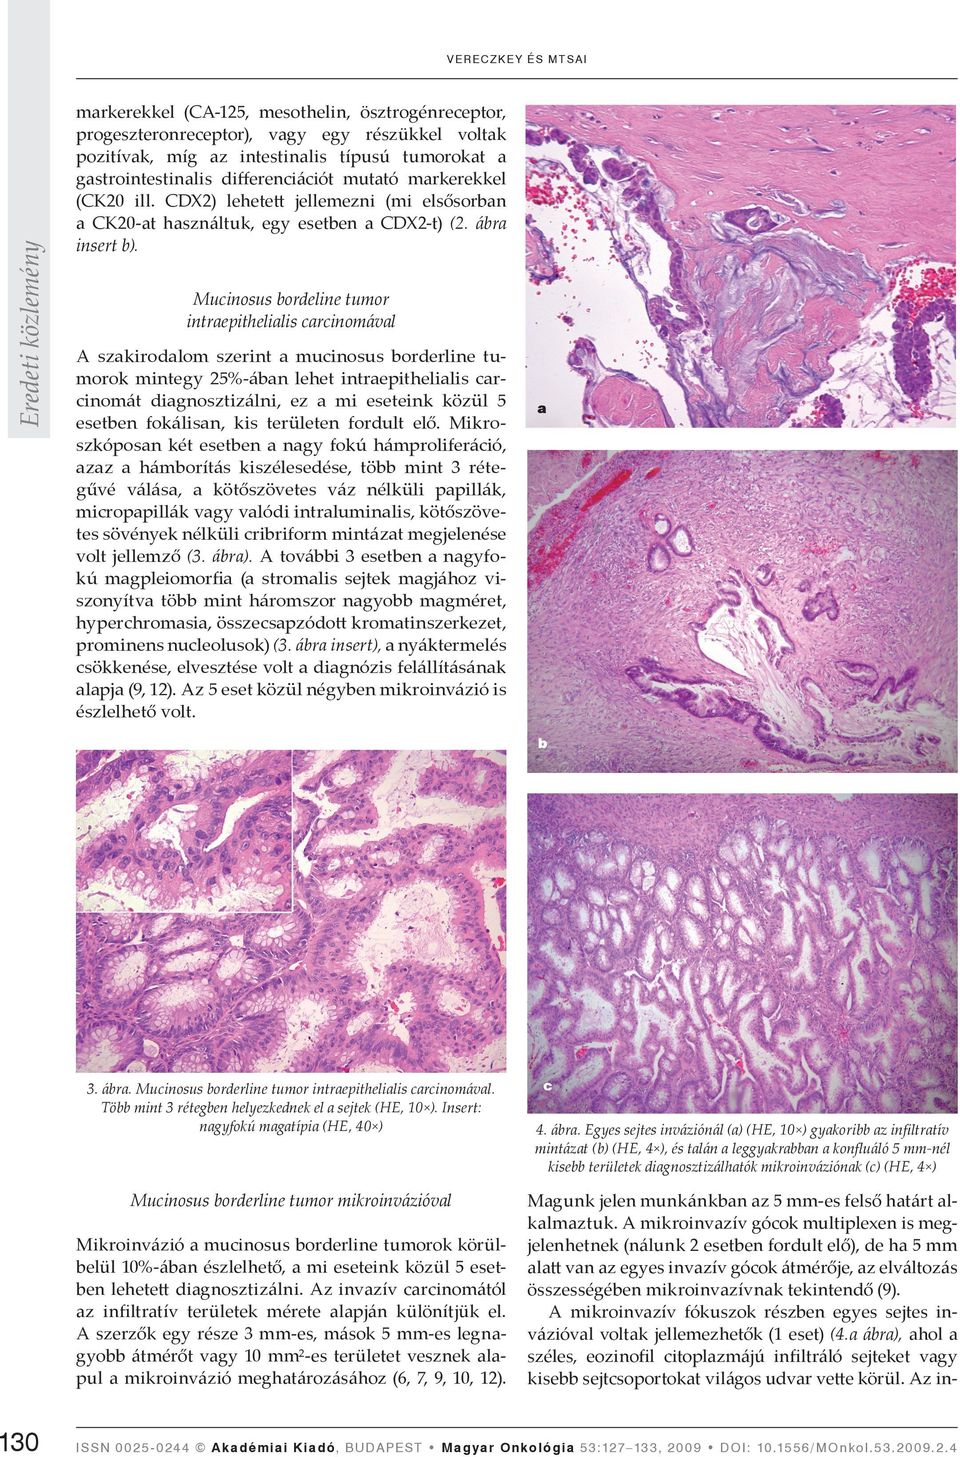 Mucinosus bordeline tumor intraepithelialis carcinomával A szakirodalom szerint a mucinosus borderline tumorok mintegy 25%-ában lehet intraepithelialis carcinomát diagnosztizálni, ez a mi eseteink